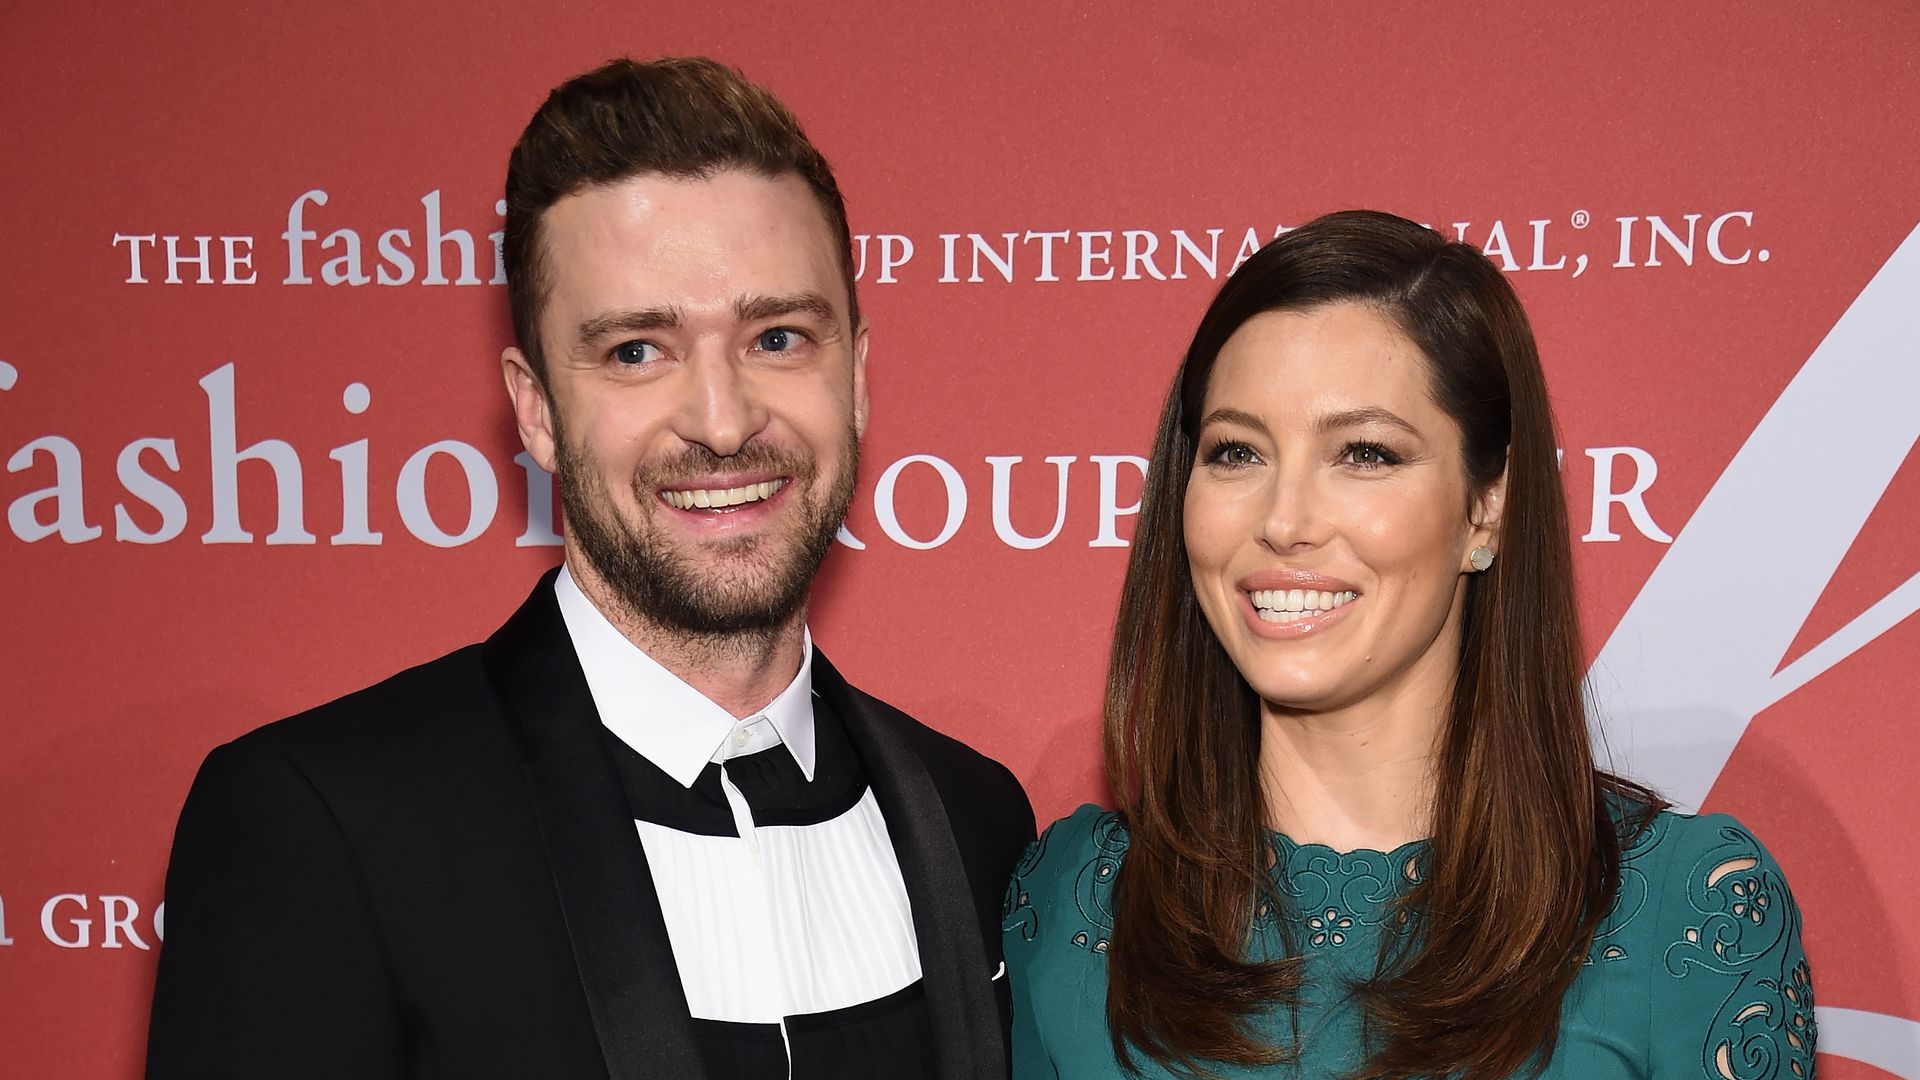 Freund bestätigt: Justin Timberlake ist wieder Vater geworden